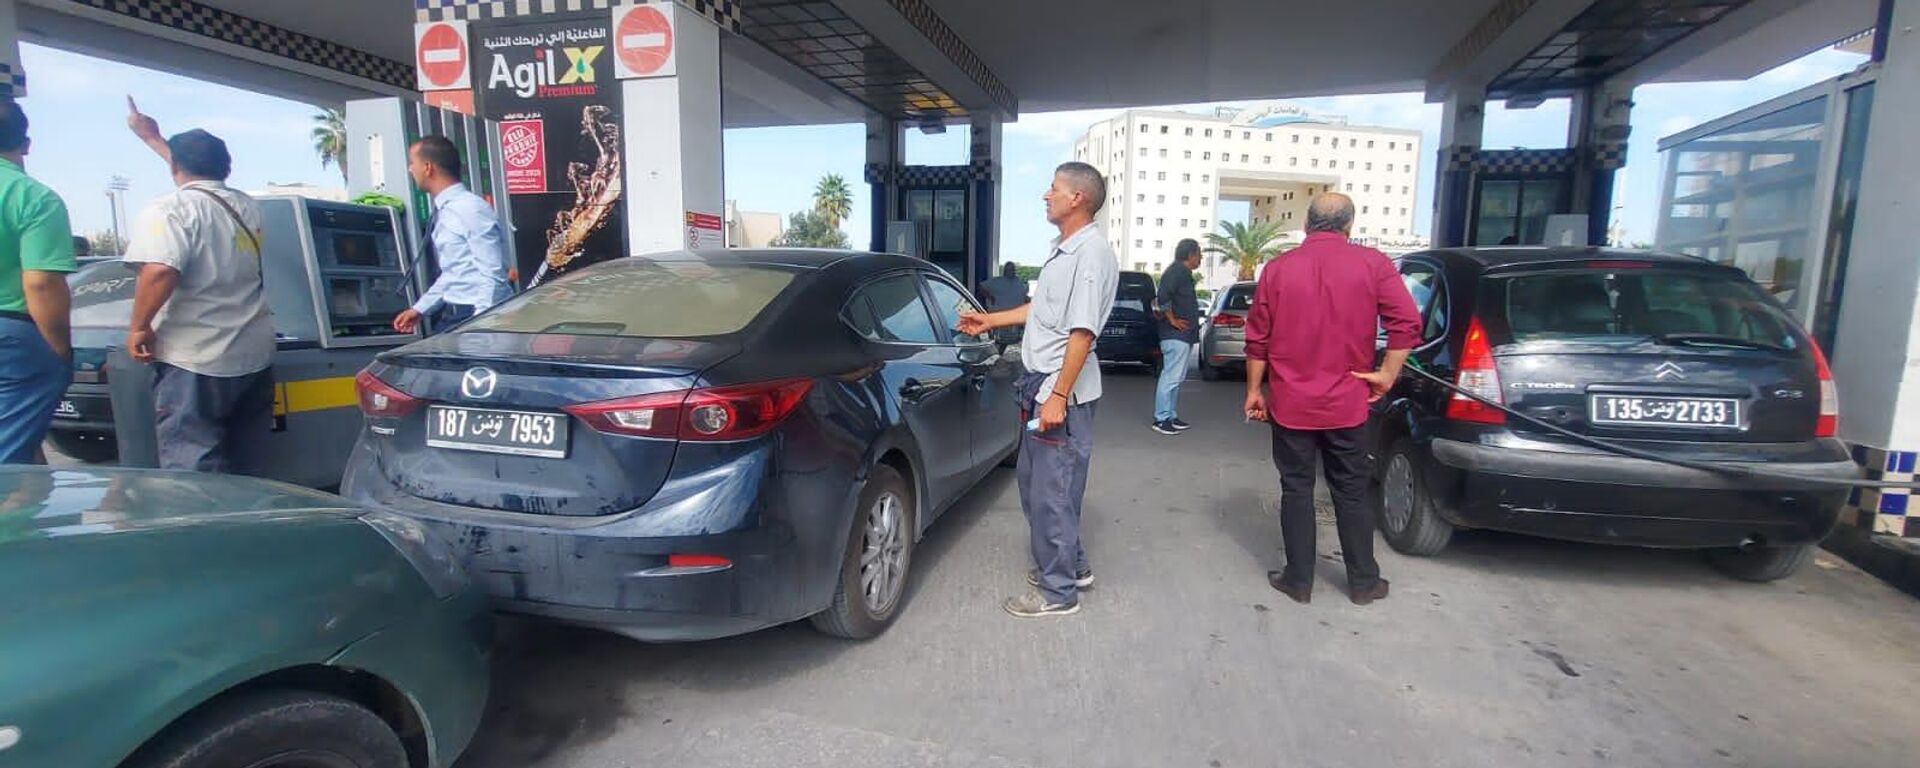  أزمة وقود في تونس تقود أصحاب السيارات إلى الانتظار لساعات في طوابير أمام محطات الوقود - سبوتنيك عربي, 1920, 13.10.2022